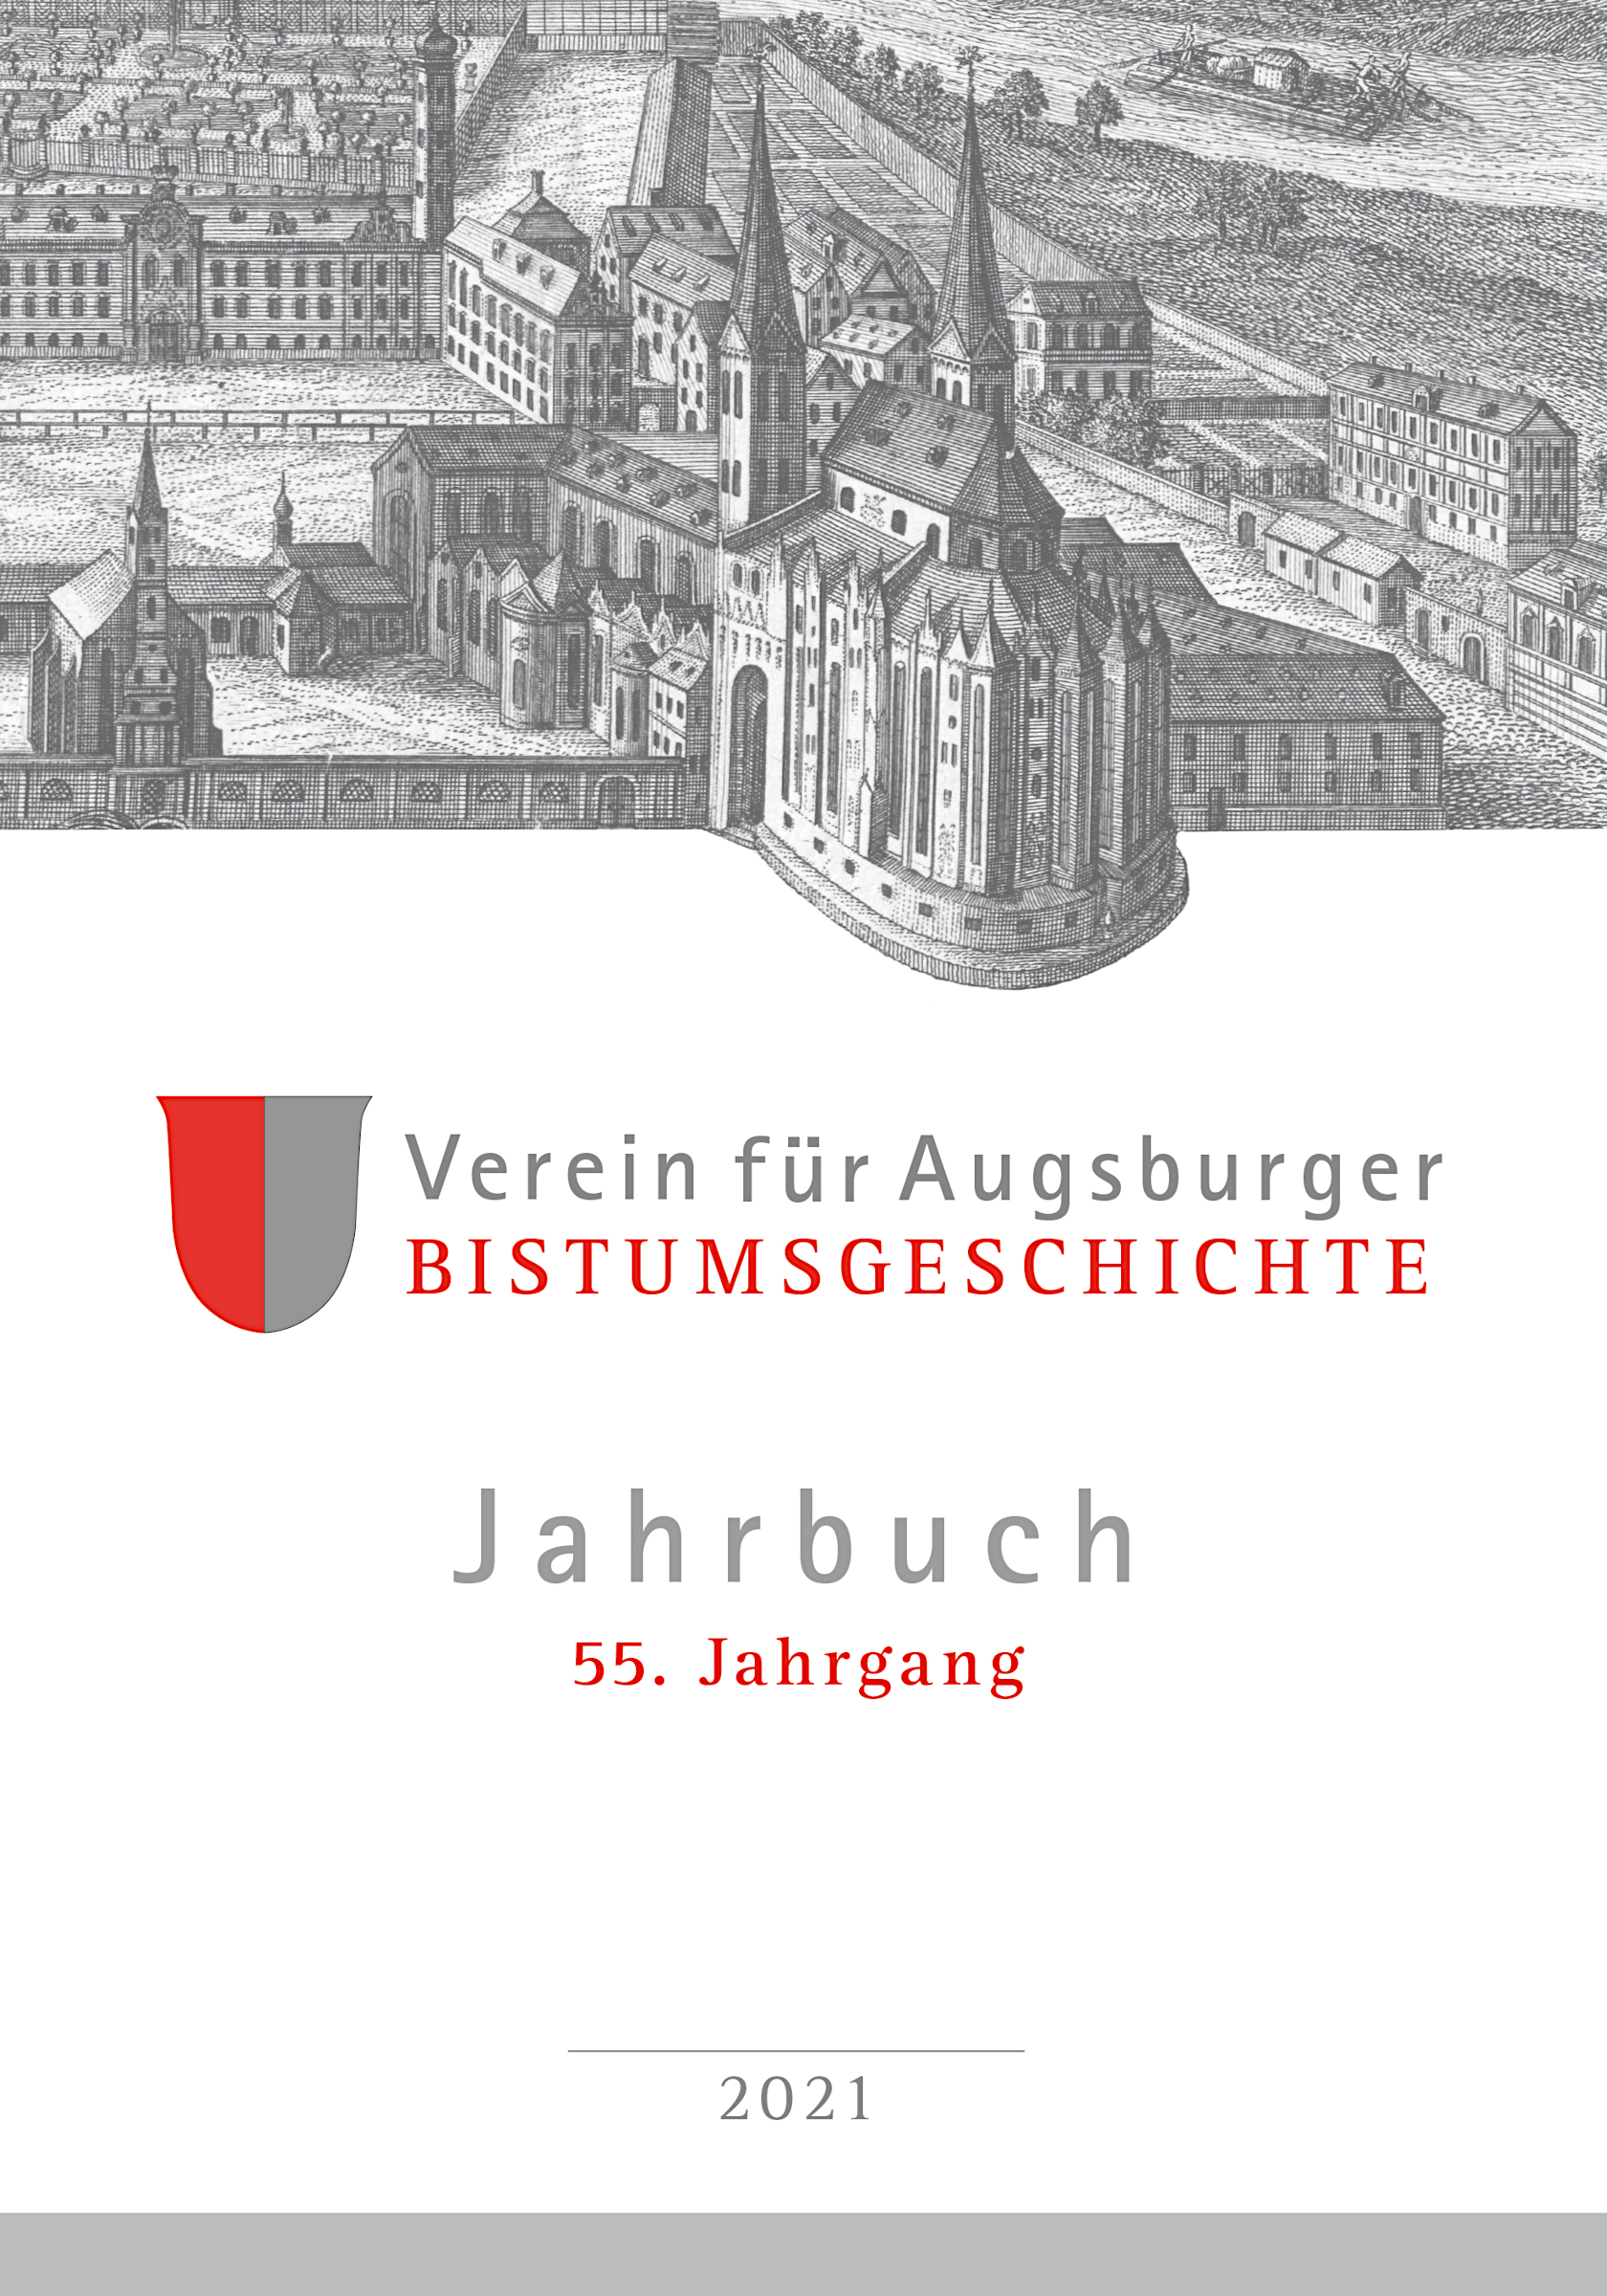  - Jahrbuch / Verein für Augsburger Bistumsgeschichte